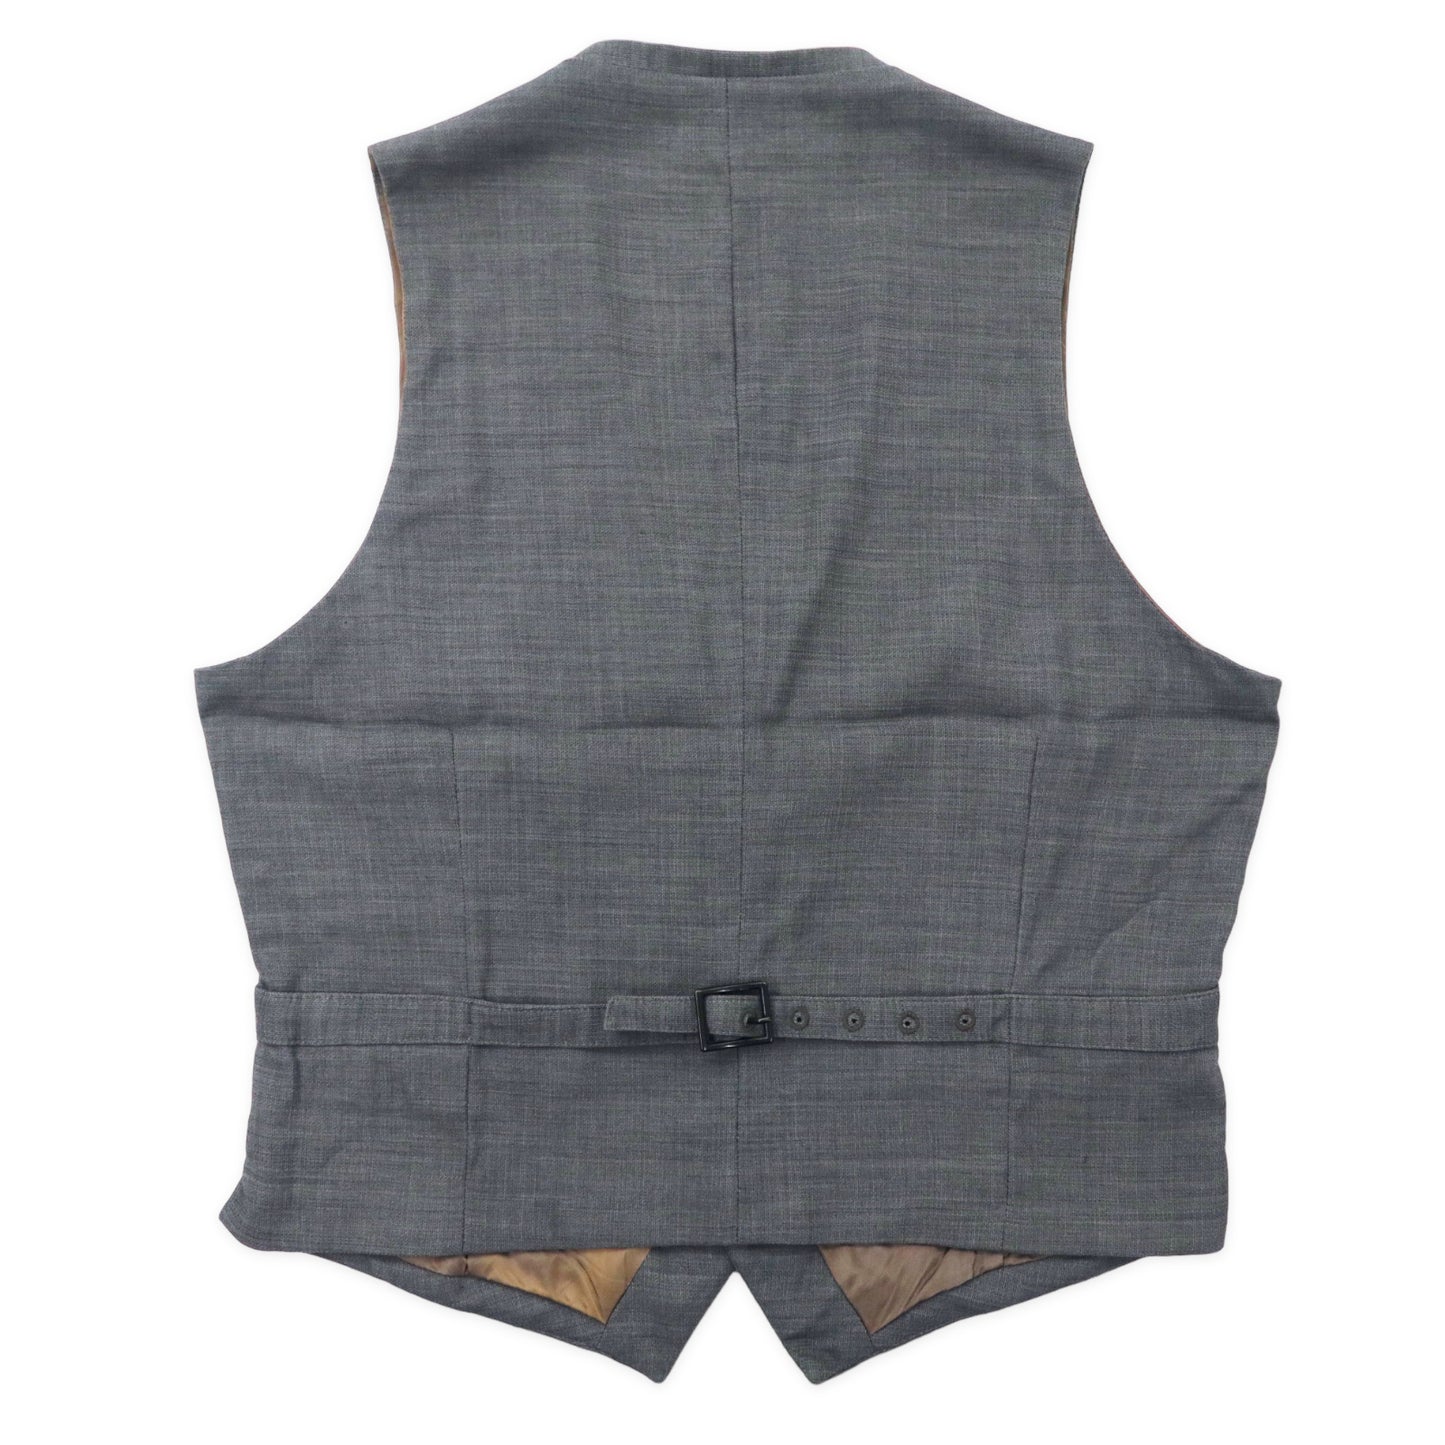 Maison Martin Margiela 14 WaistCoat Vest 46 Gray Wool Italy Made ...